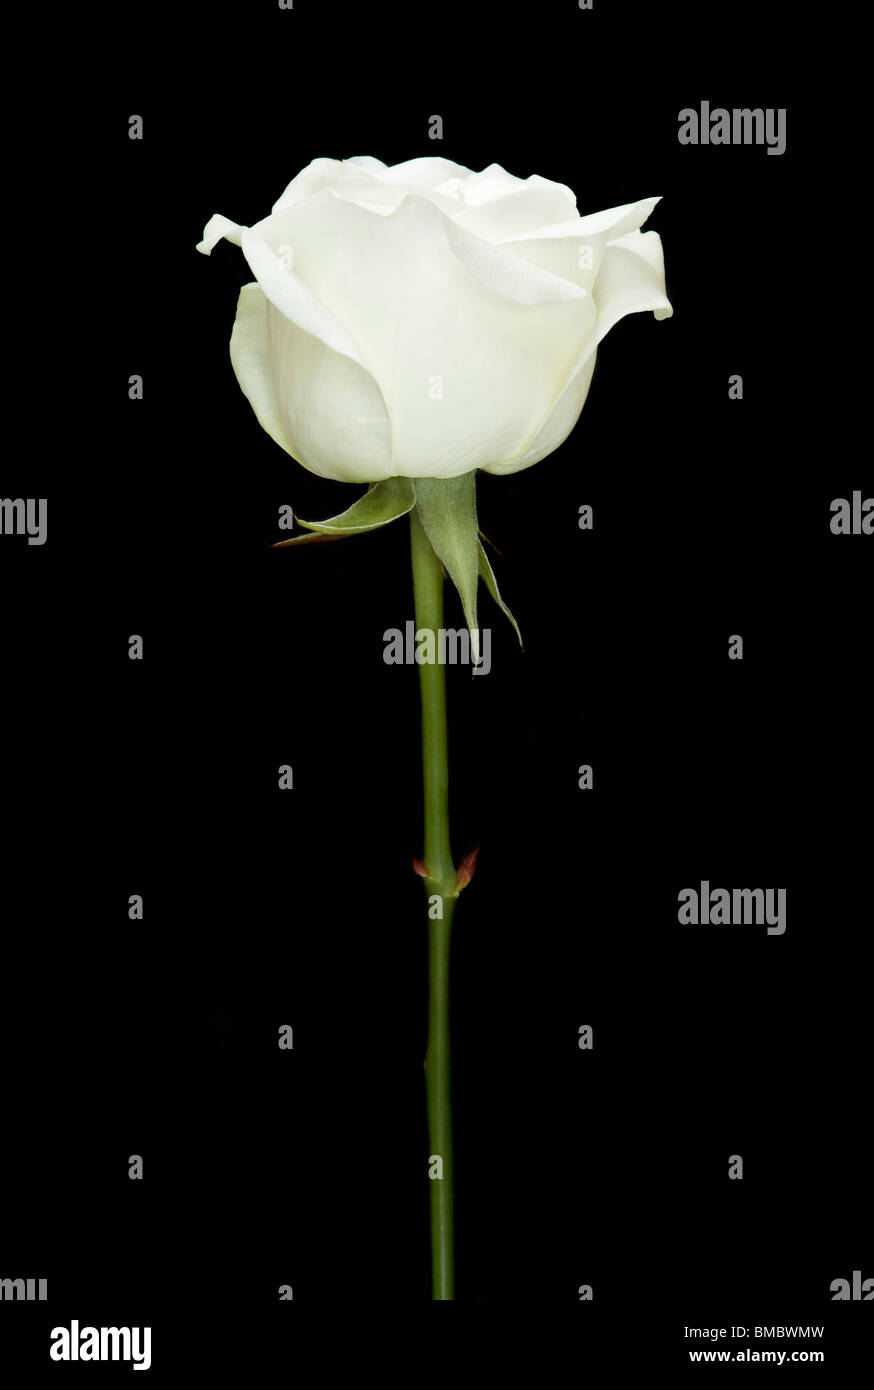 Einzelne weiße Rose-Stamm auf einem schwarzen Hintergrund Stockfotografie -  Alamy